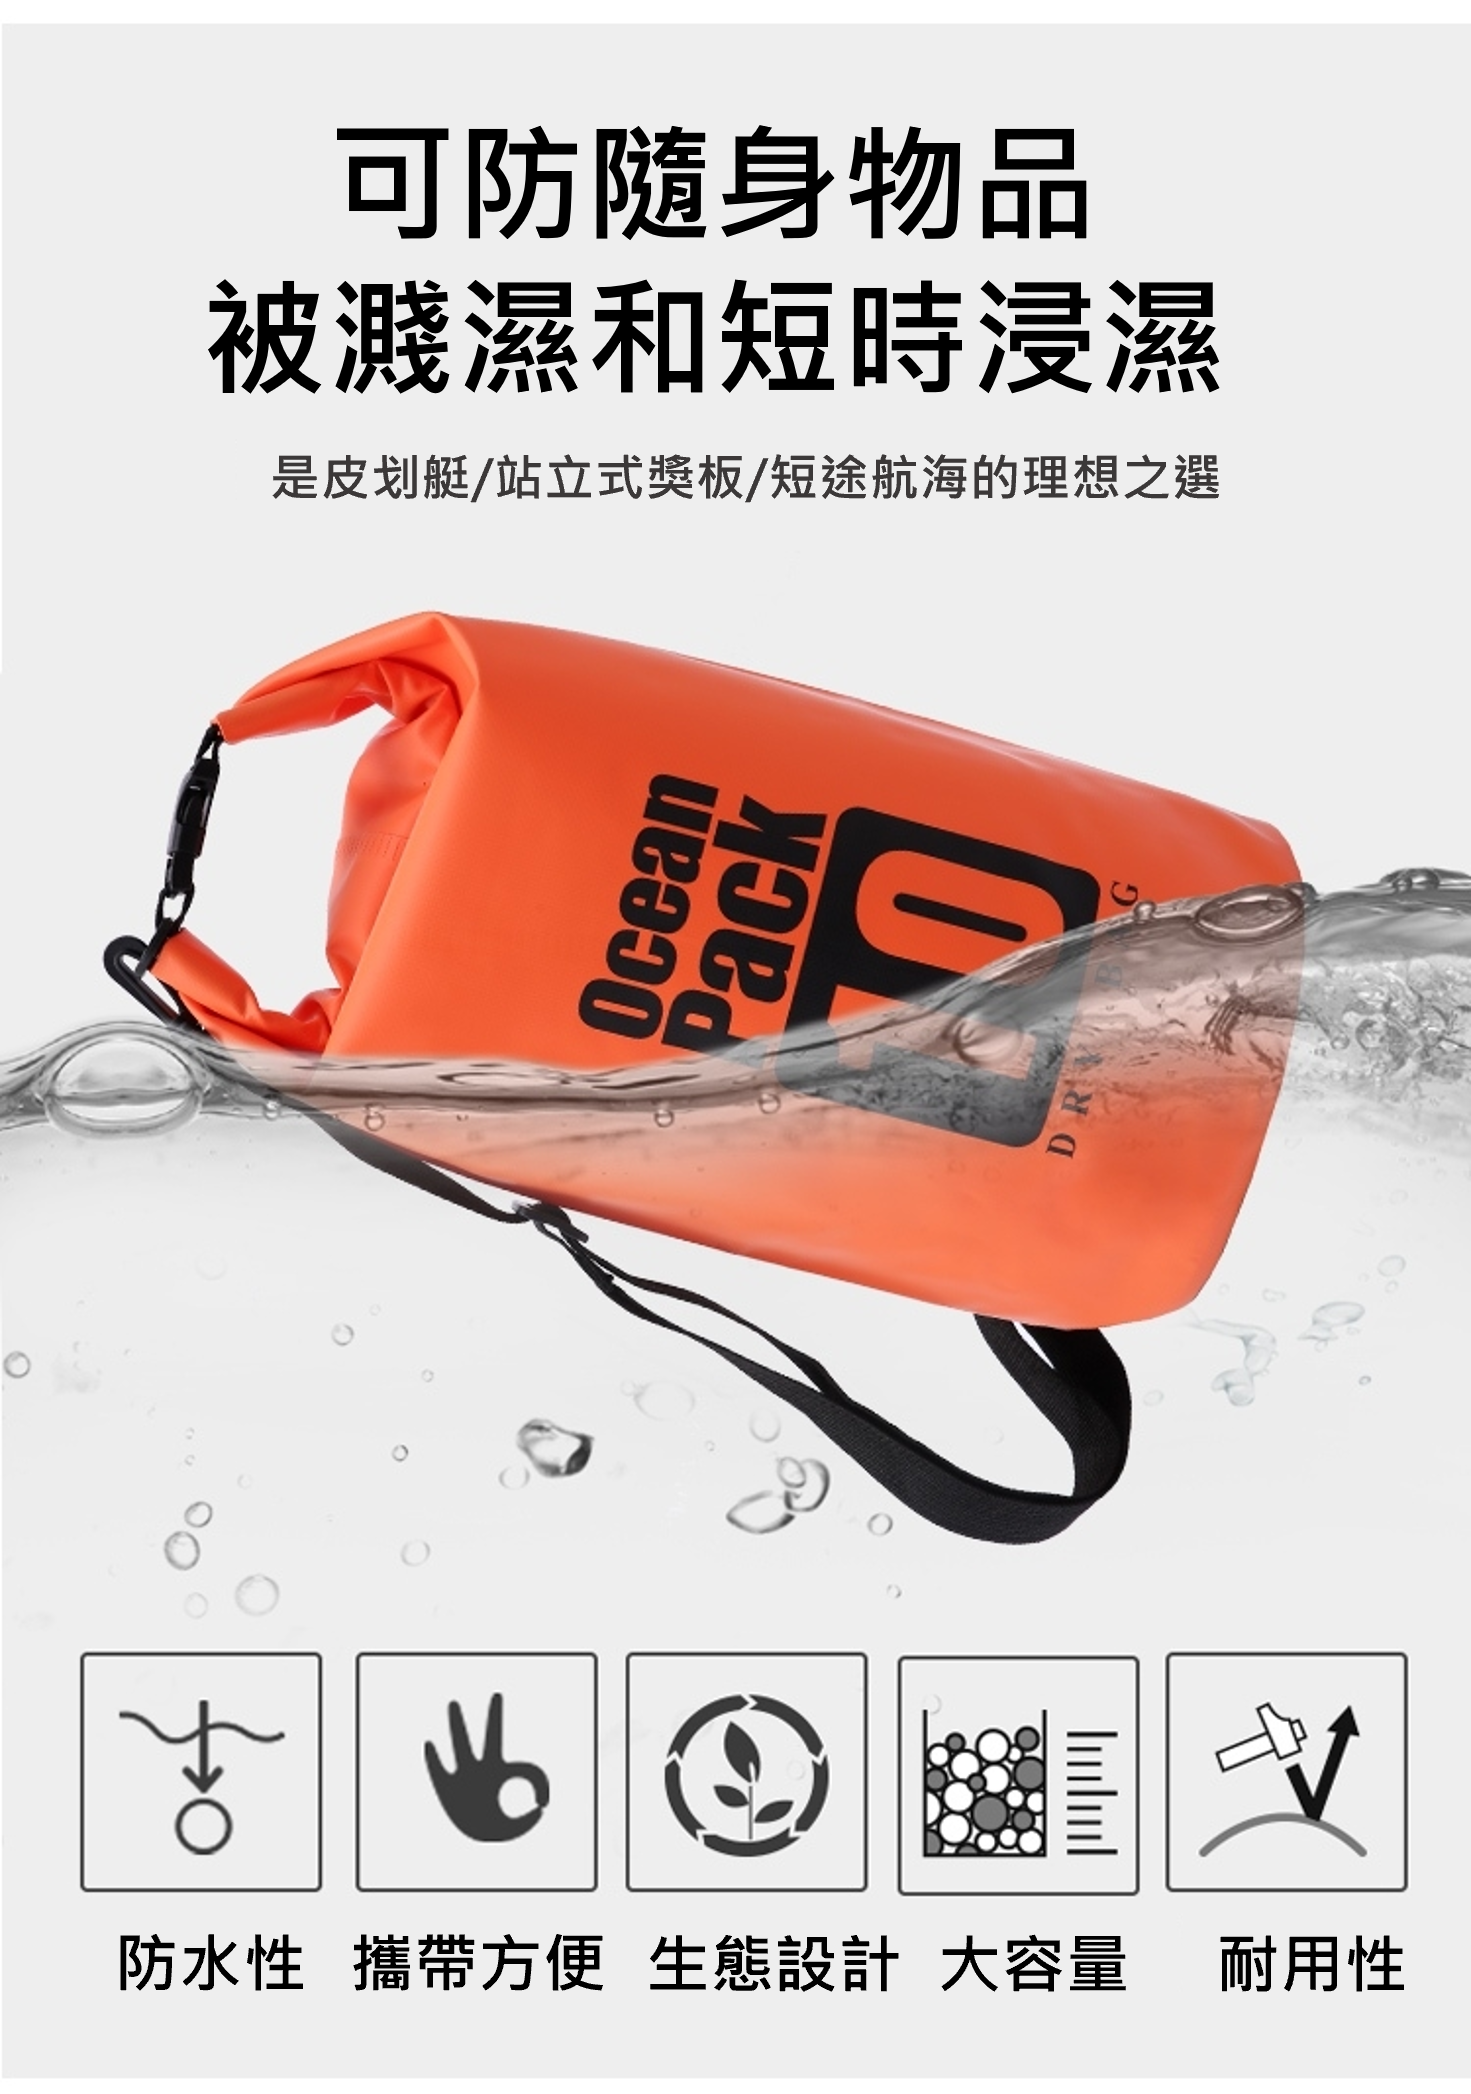 戶外 防水袋 大容量 漂流 潛水 沙灘 手機 收納袋 溯溪 游泳 浮潛 防水包 背包 外出 出遊